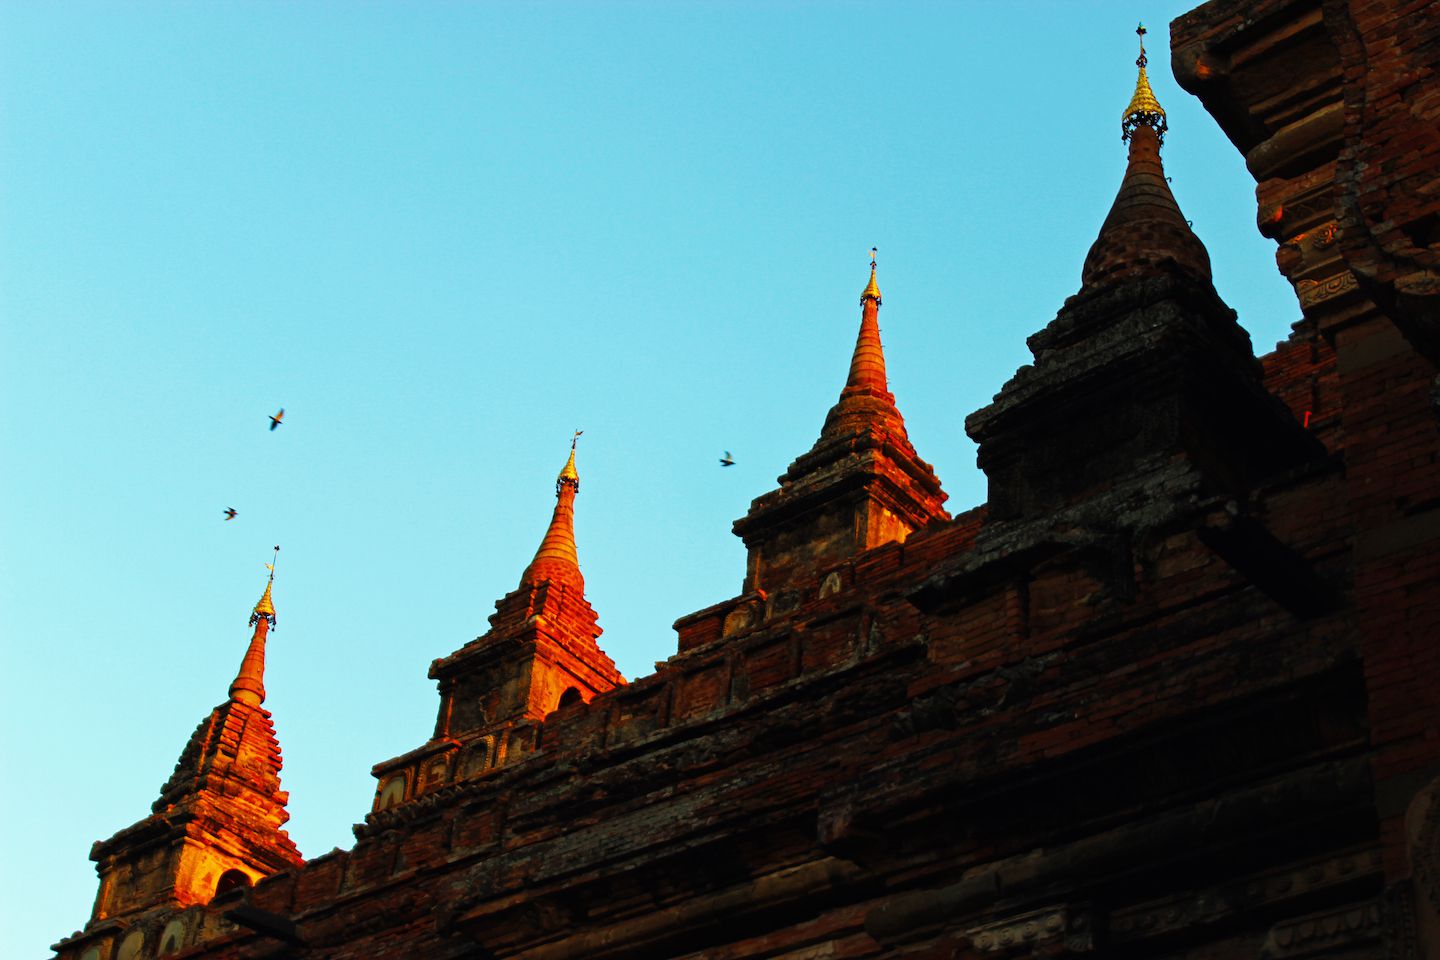 Towers of Htilominlo Temple in Bagan, Myanmar